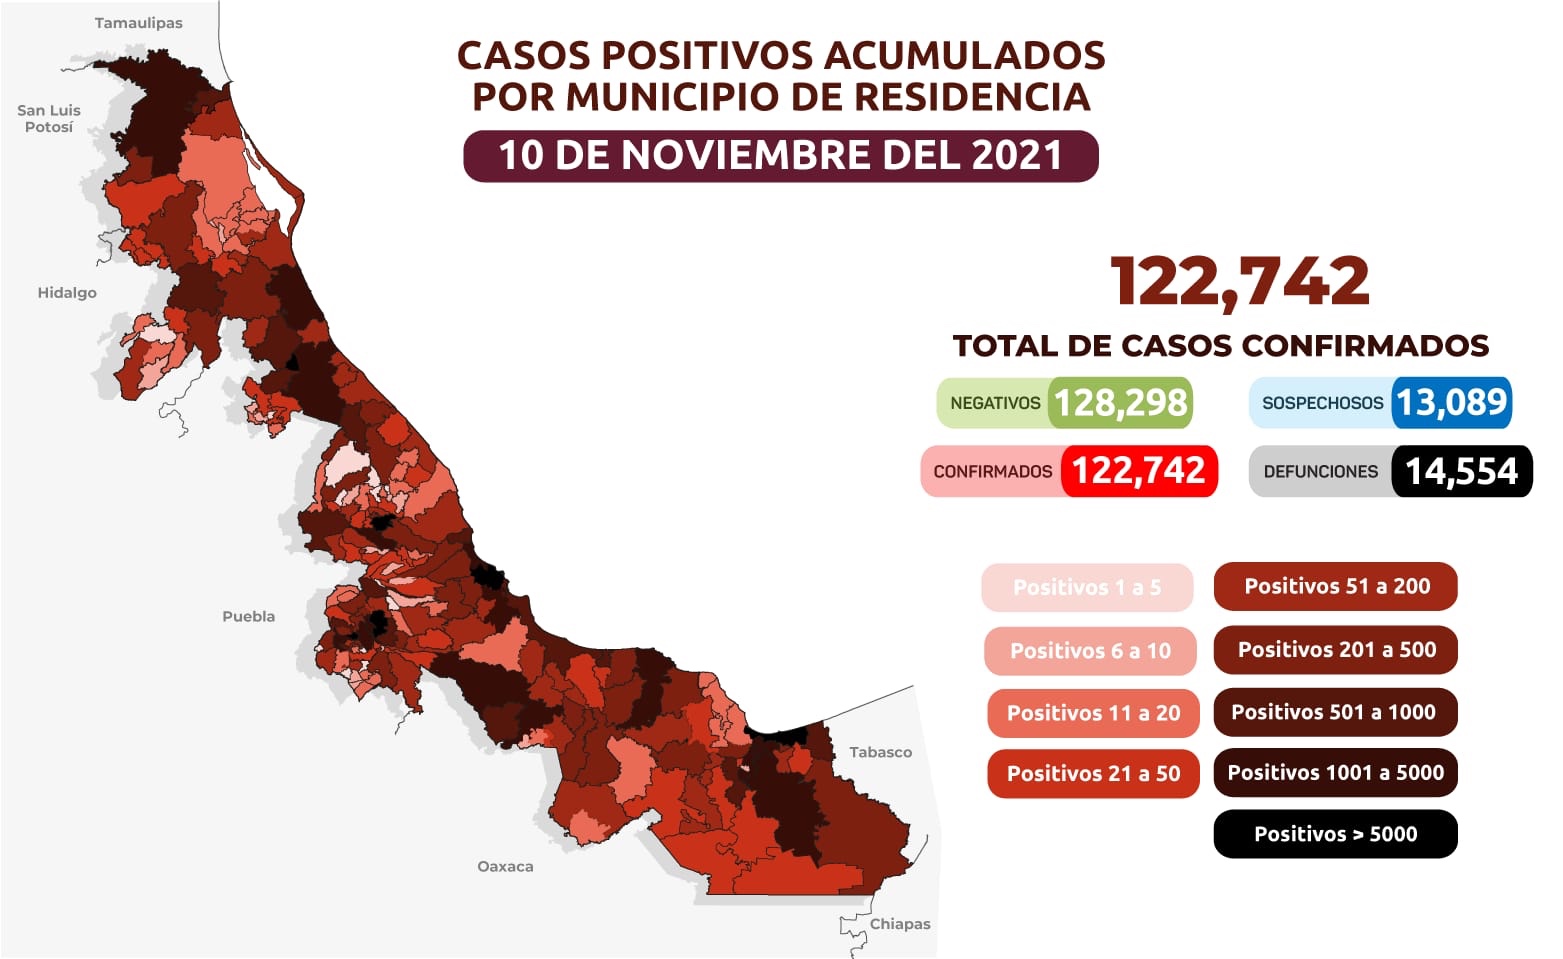 Reportan 69 nuevos casos de Covid-19 en Veracruz